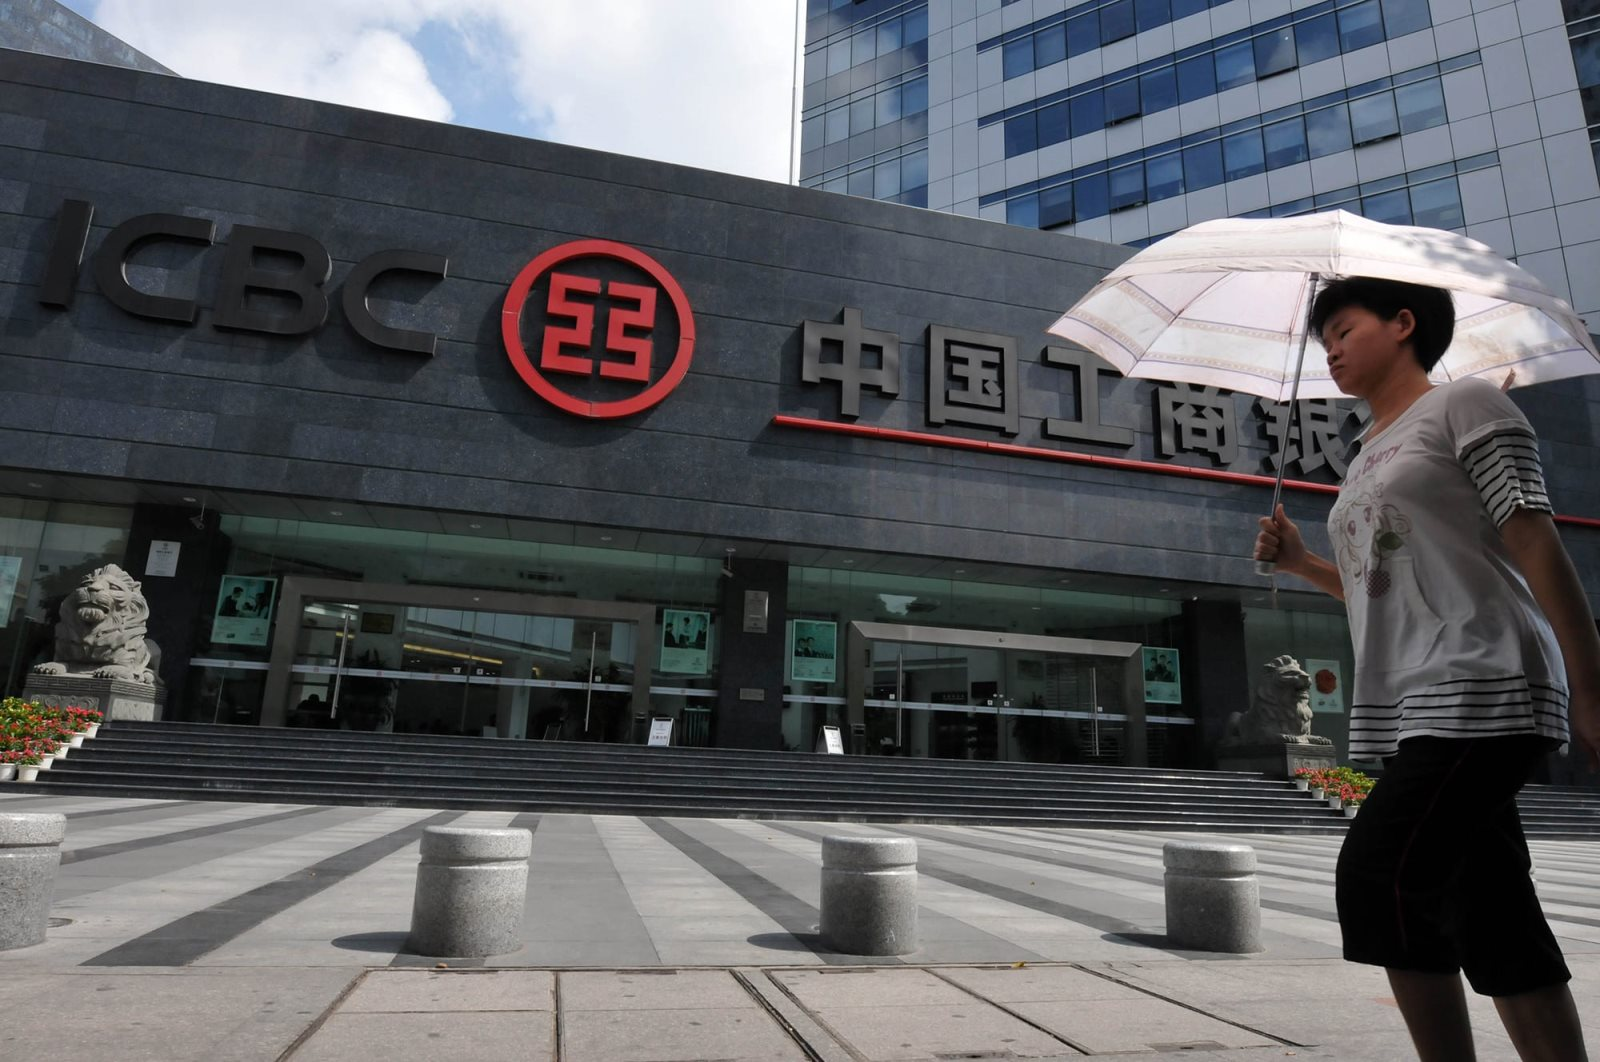 Nhà băng hàng đầu Trung Quốc bất ngờ áp hạn chế với các ngân hàng Nga, Bắc Kinh liệu có 'xoay trục'? - Ảnh 3.